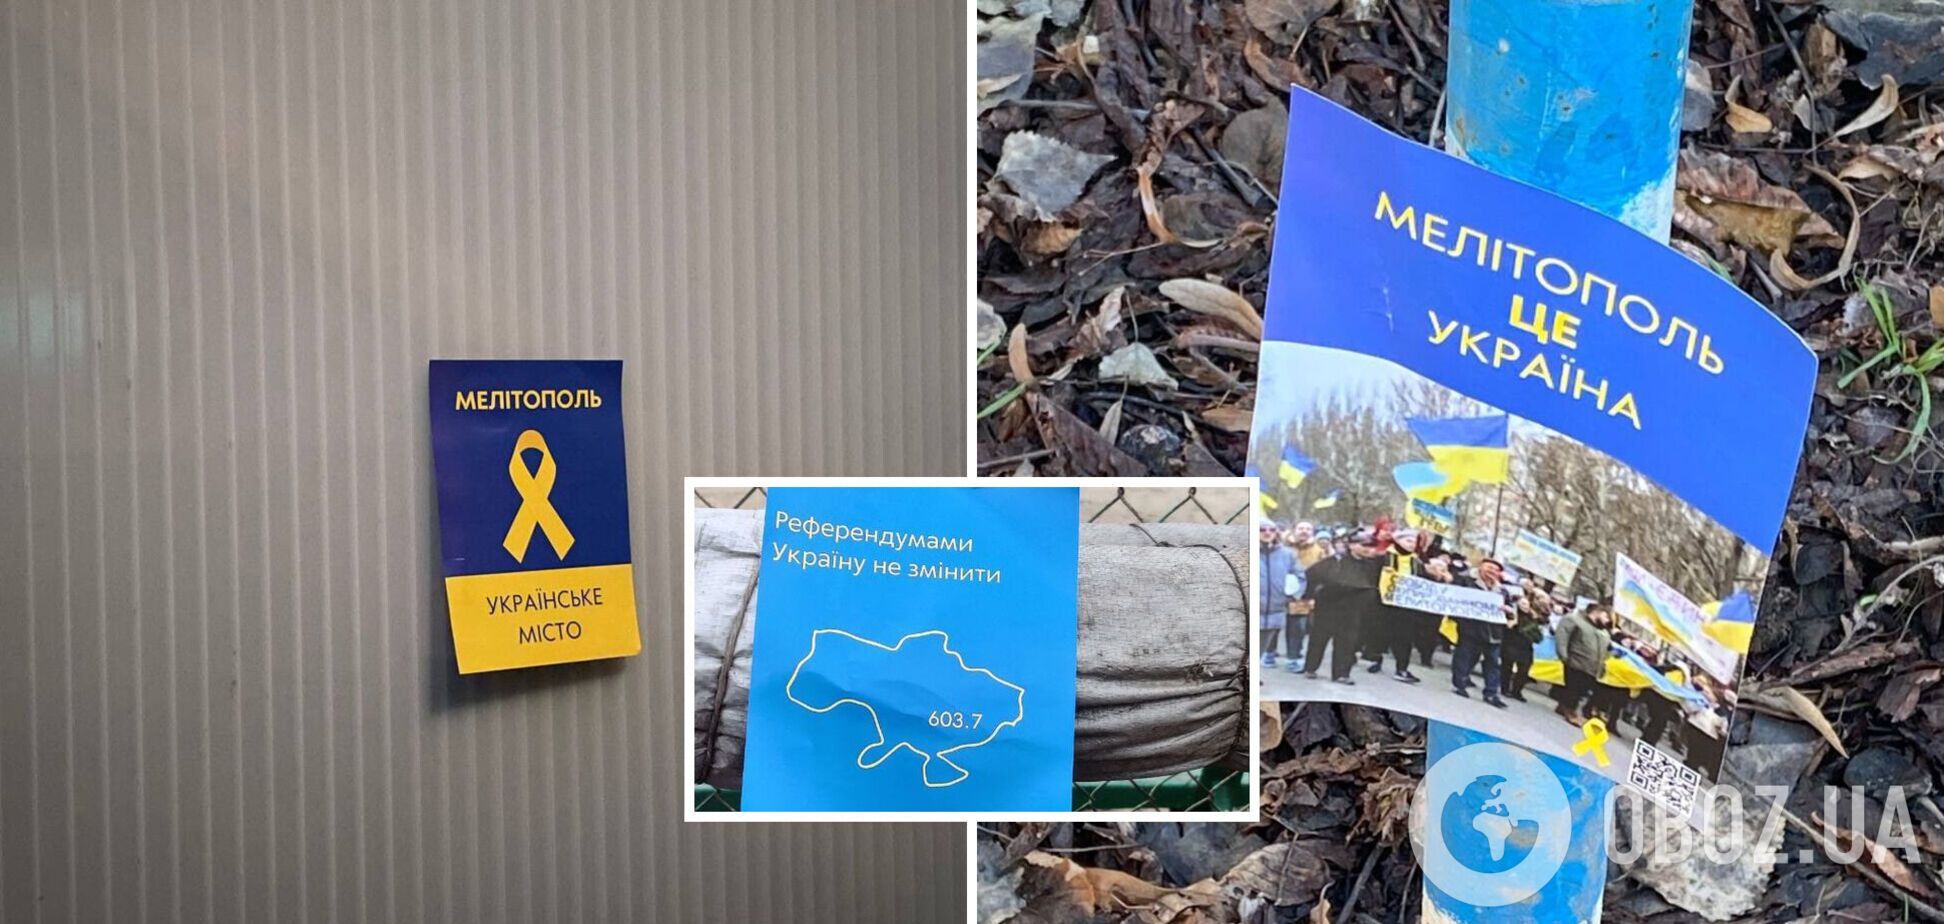 Украинские партизаны в Мелитополе и Бердянске устроили акцию сопротивления